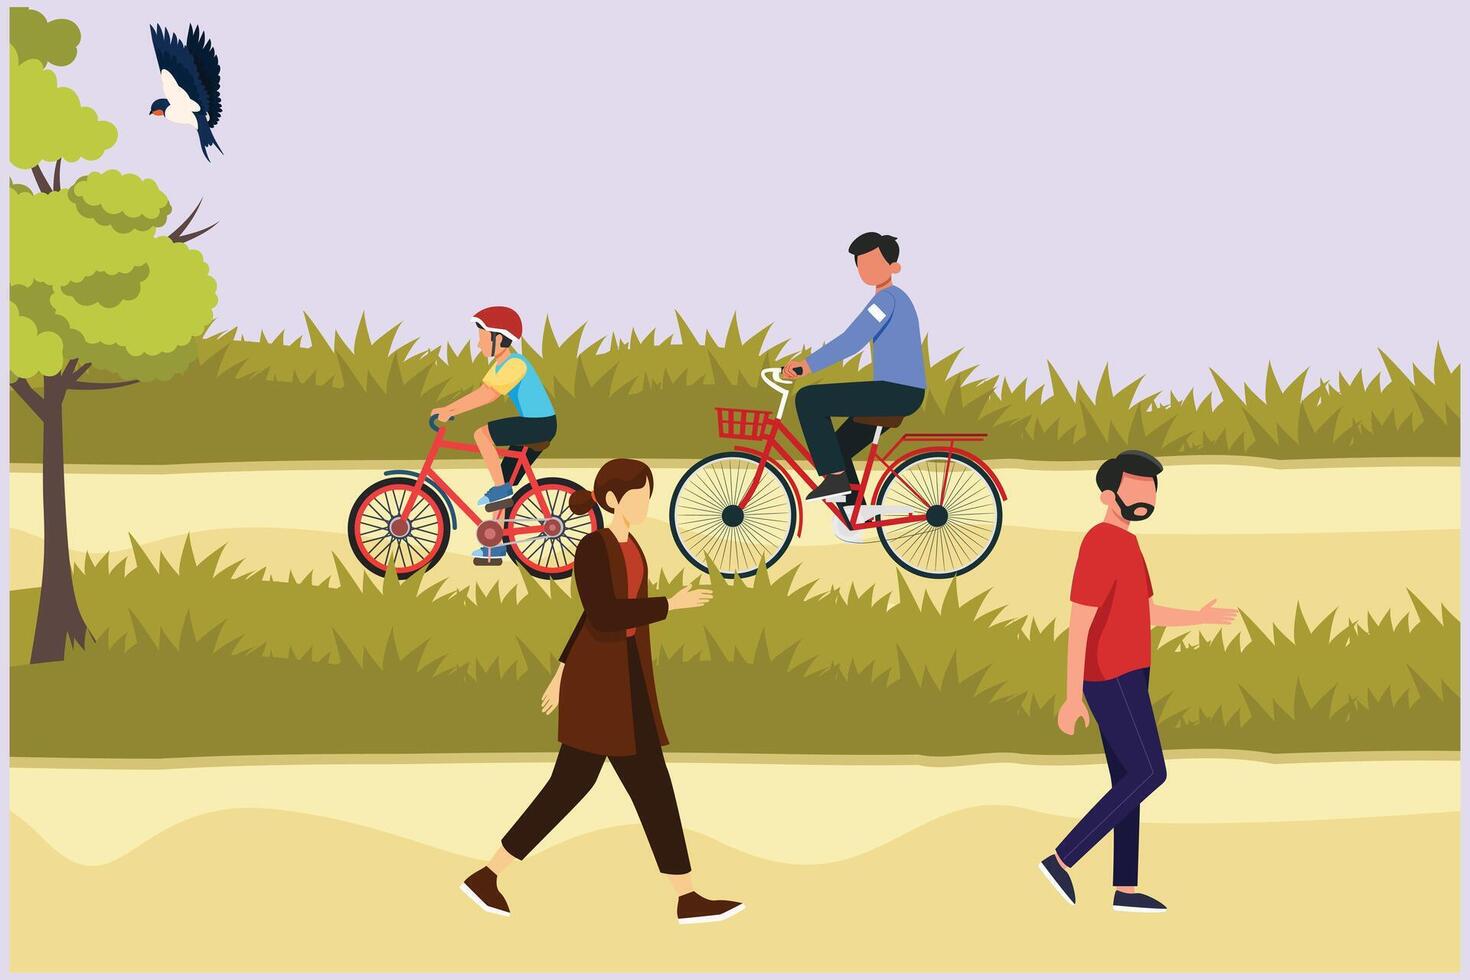 mensen wandelen, spelen, rijden fiets Bij stad park. activiteiten buitenshuis concept gekleurde vlak vector illustratie geïsoleerd.